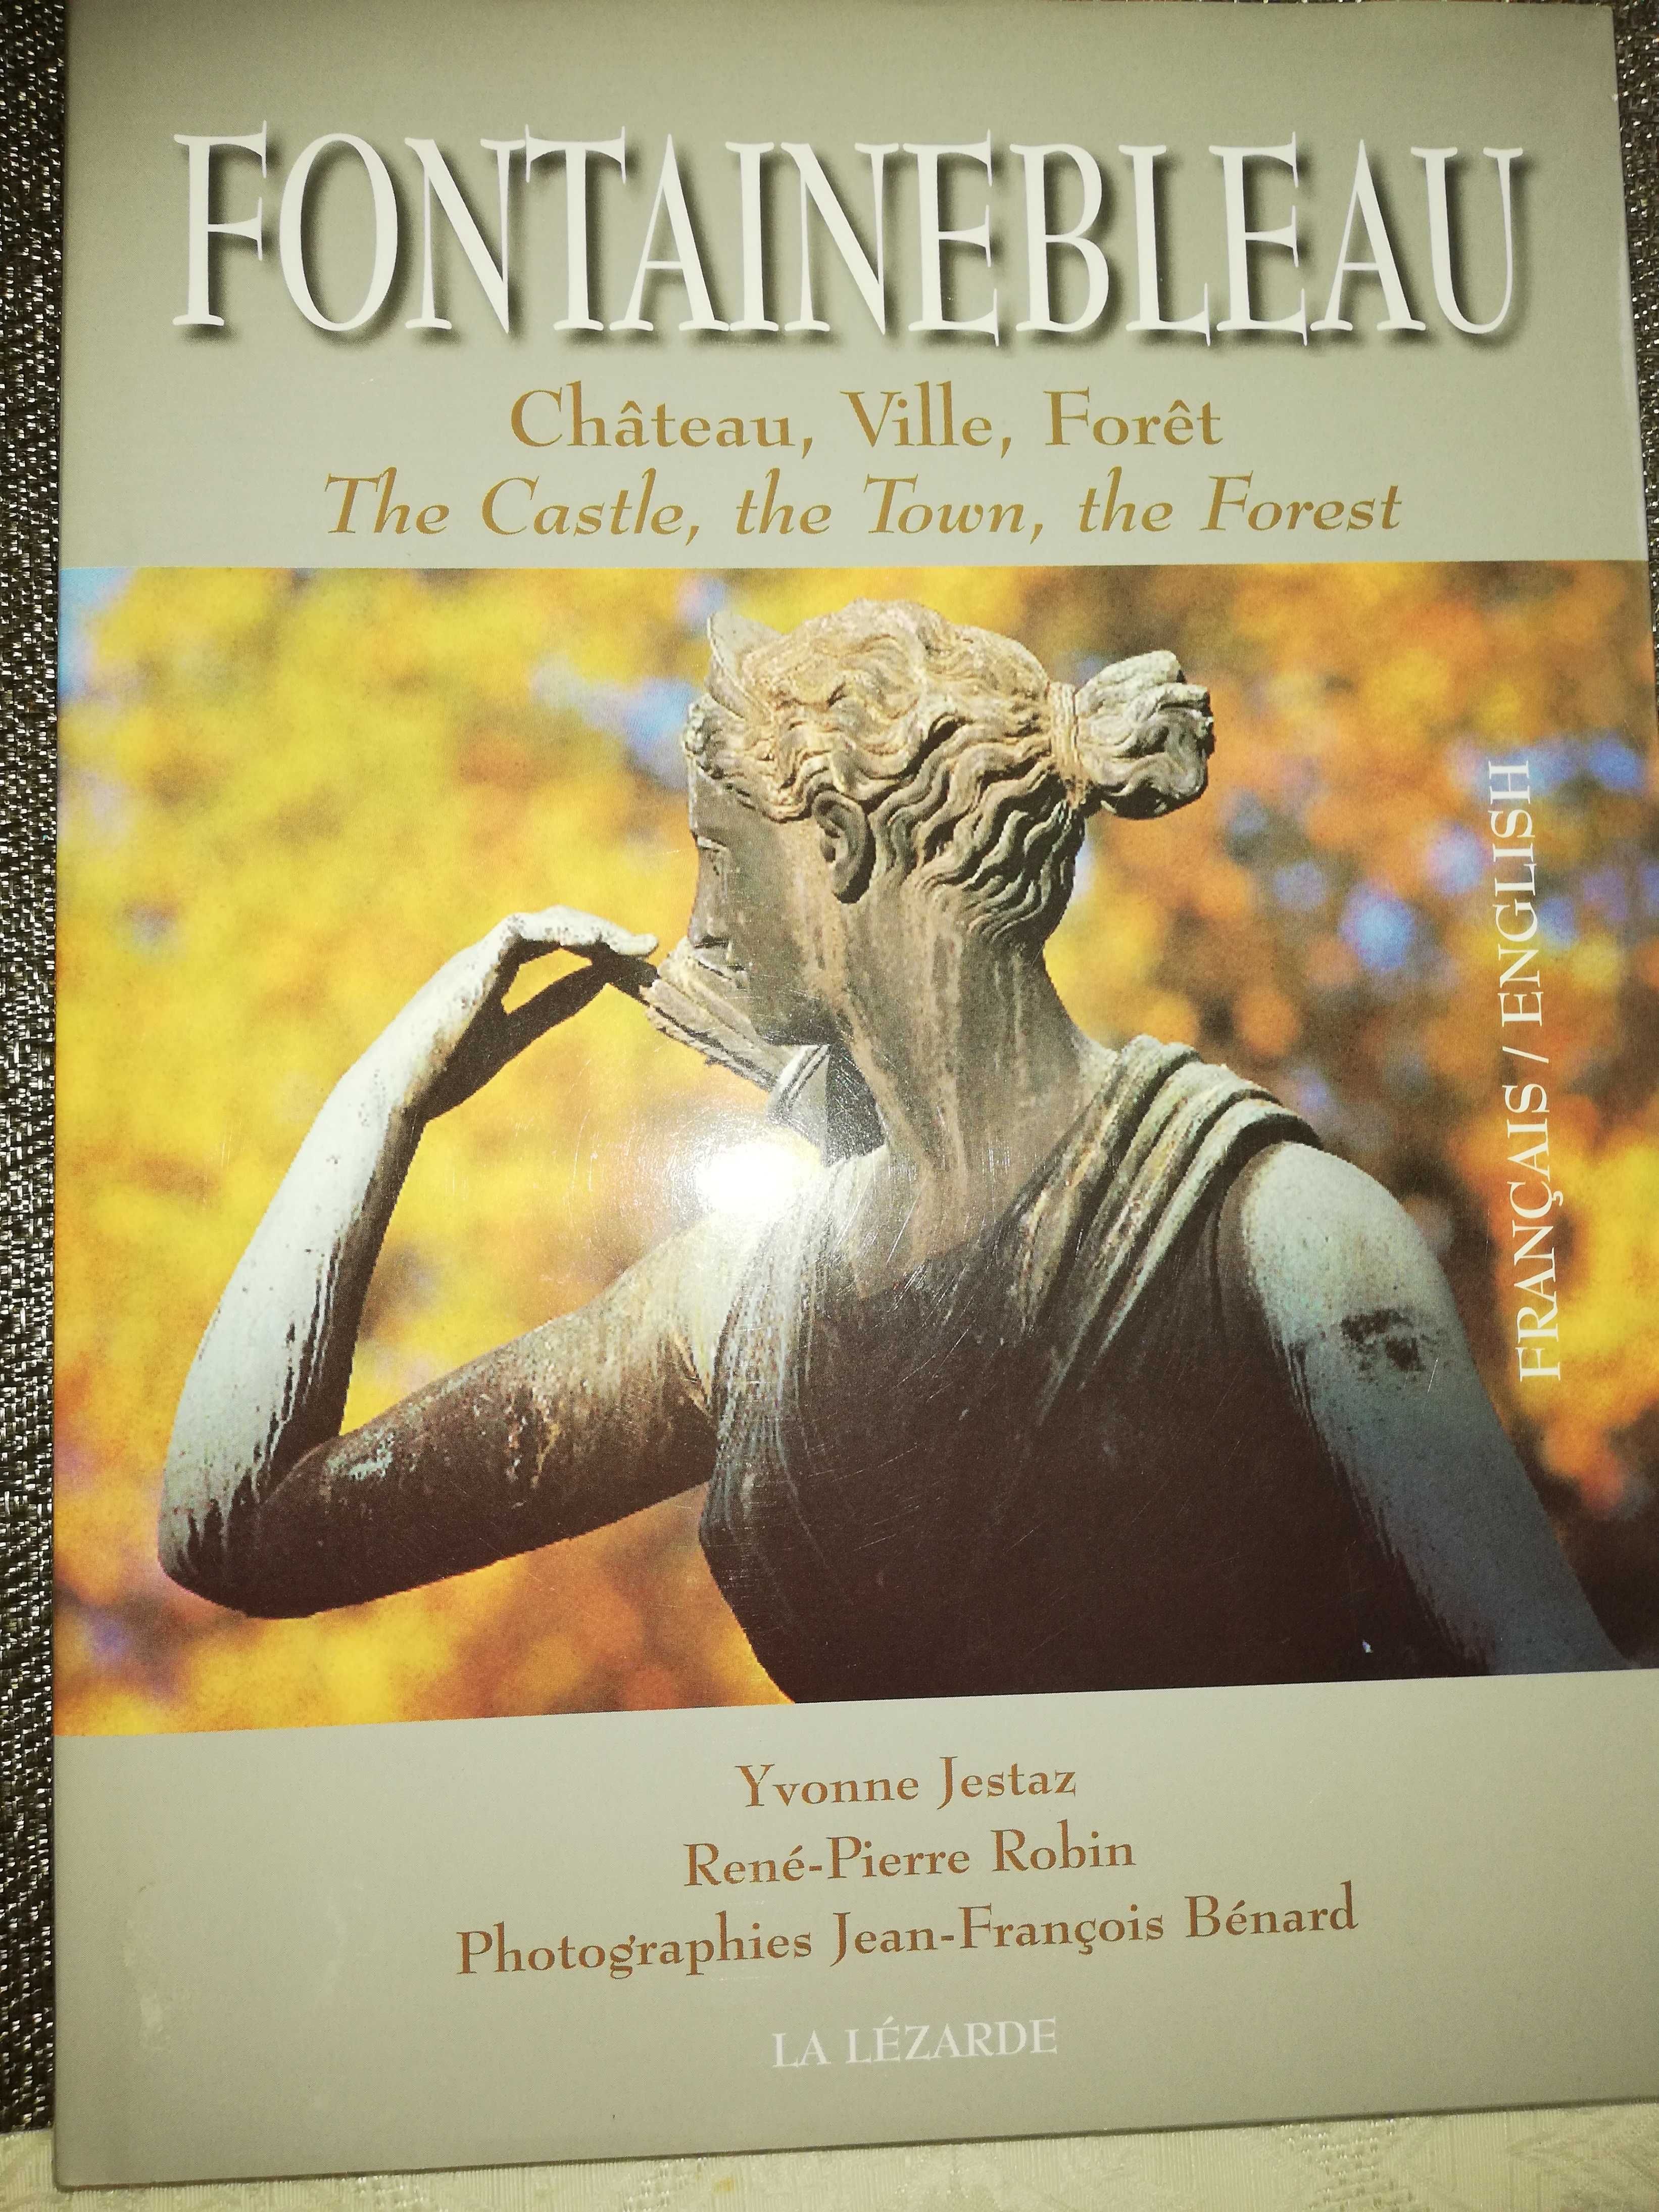 Album Fontainebleau - wydanie w języku francuskim i angielskim